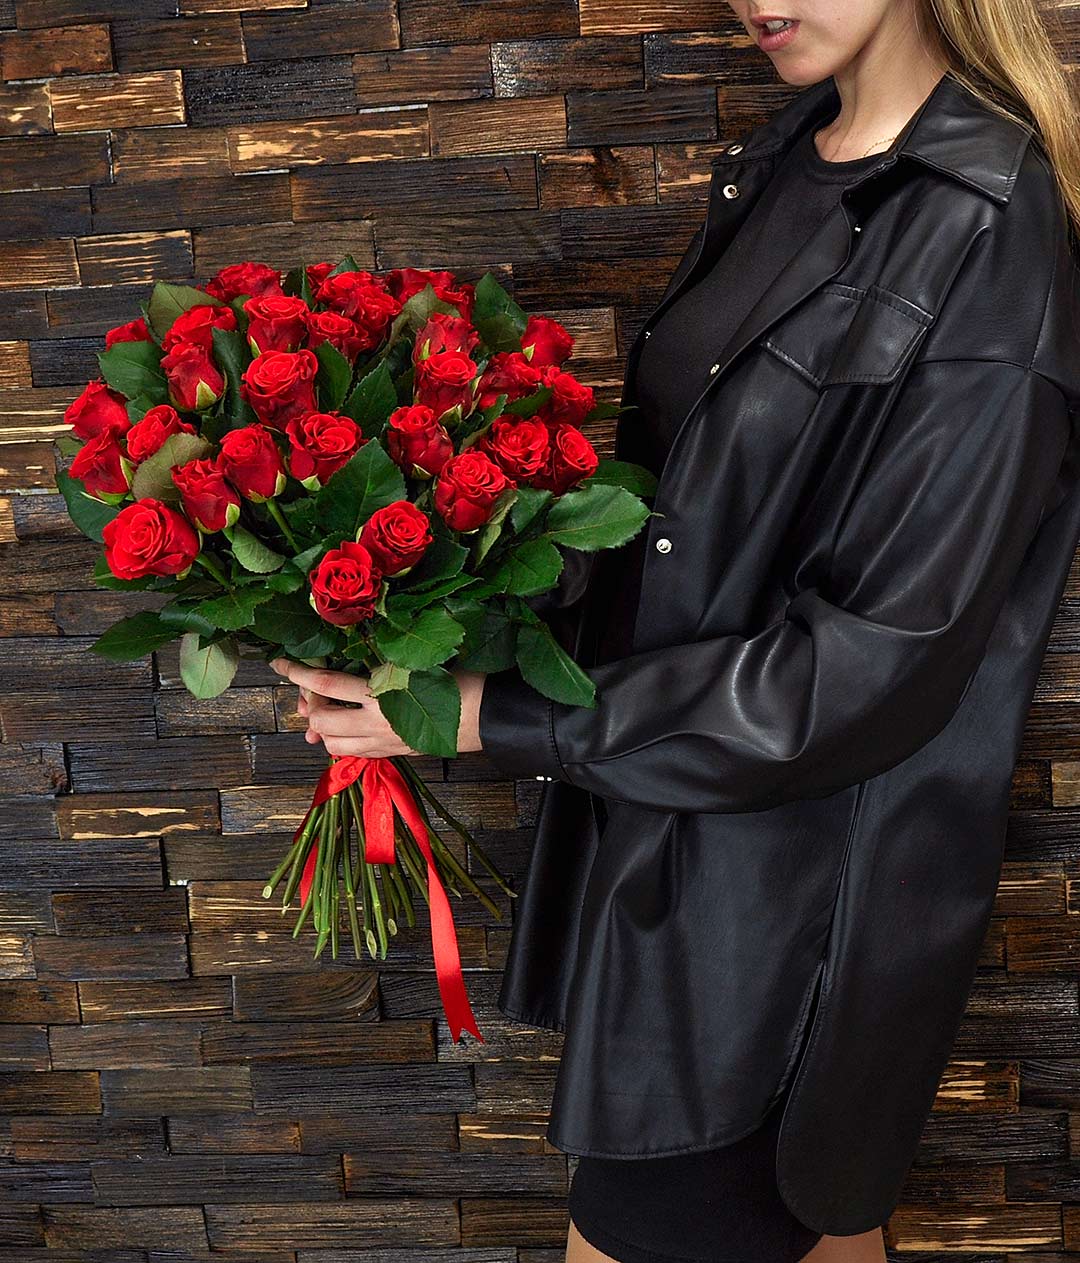 Изображение Букет троянд 31 шт. червона місцева